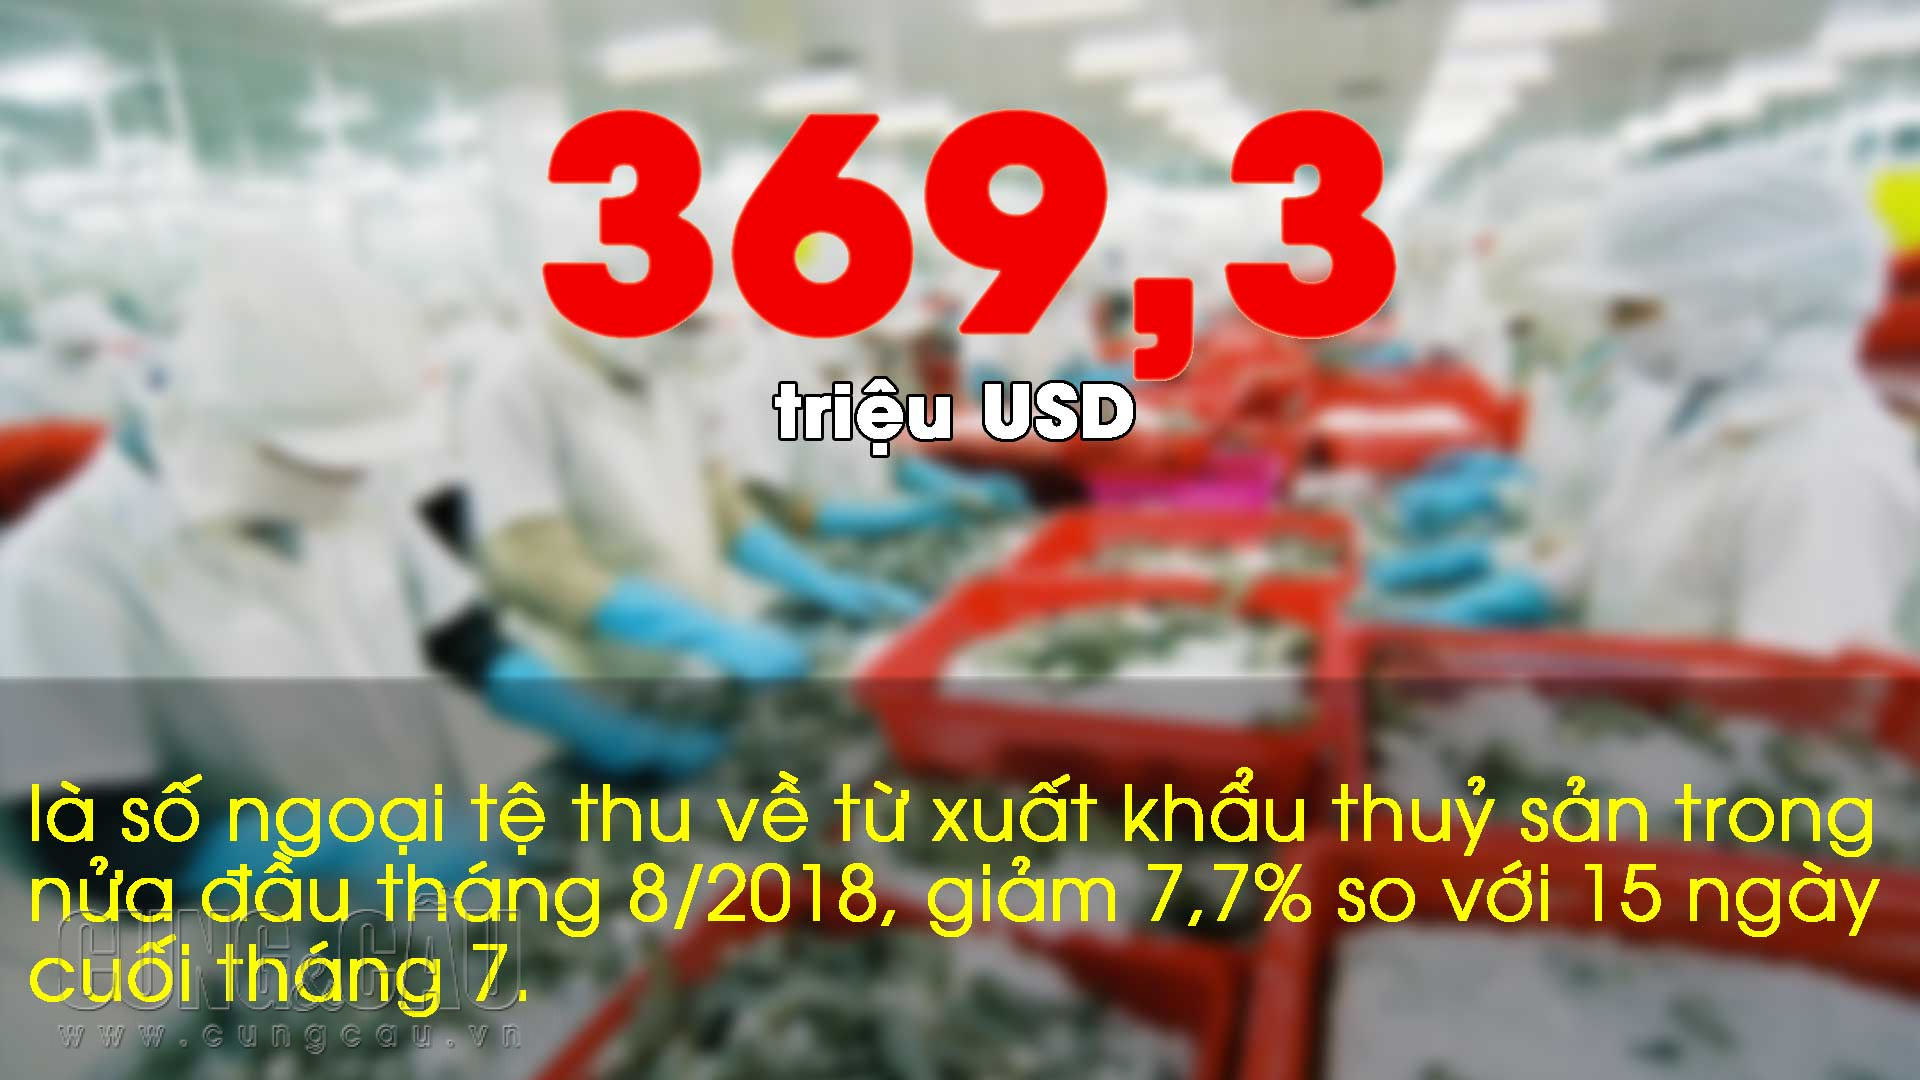 Những con số ấn tượng trong tuần: 25.000 tỷ đồng đầu tư mở rộng sân bay Tân Sơn Nhất